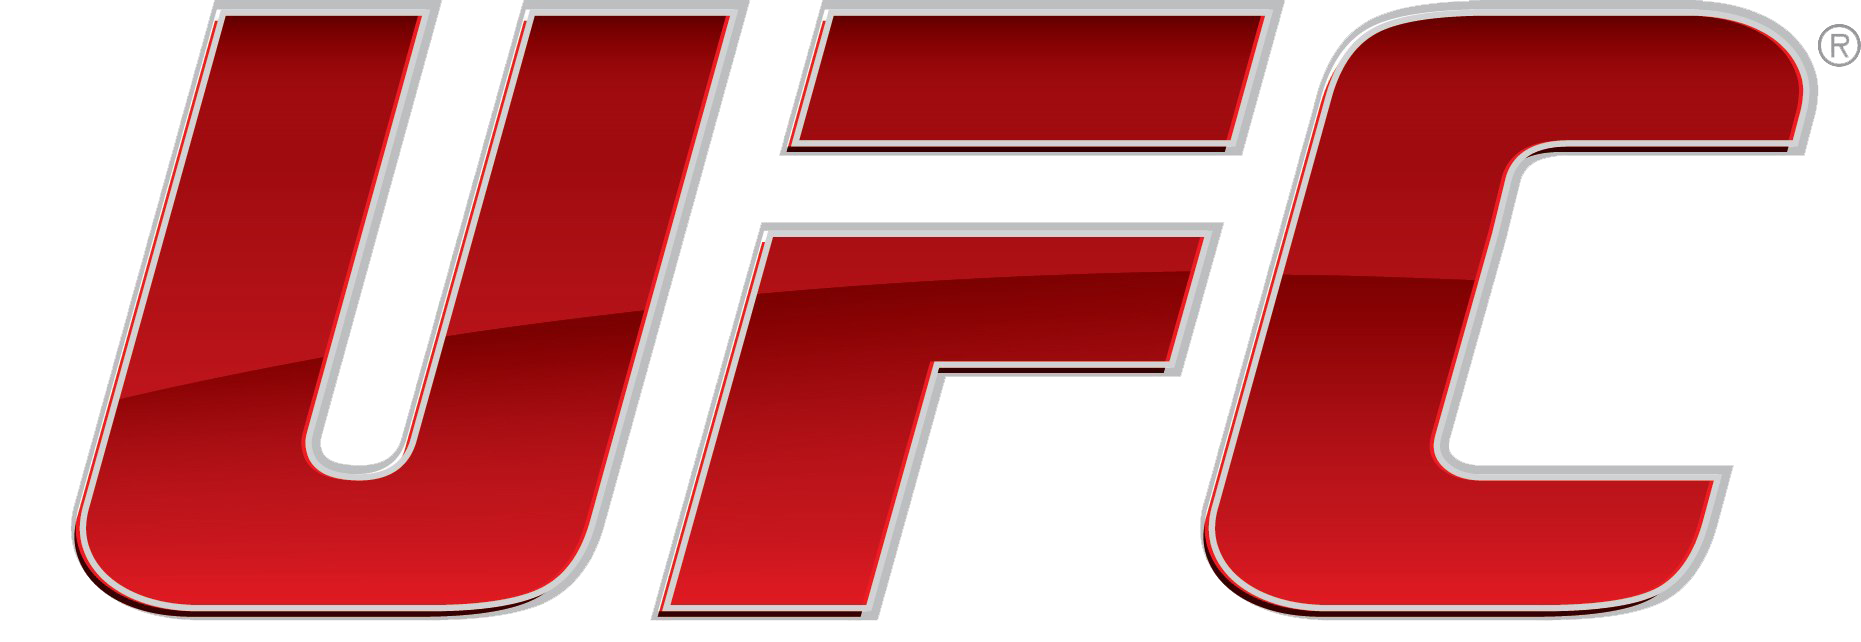 Fundo do logotipo do UFC PNG